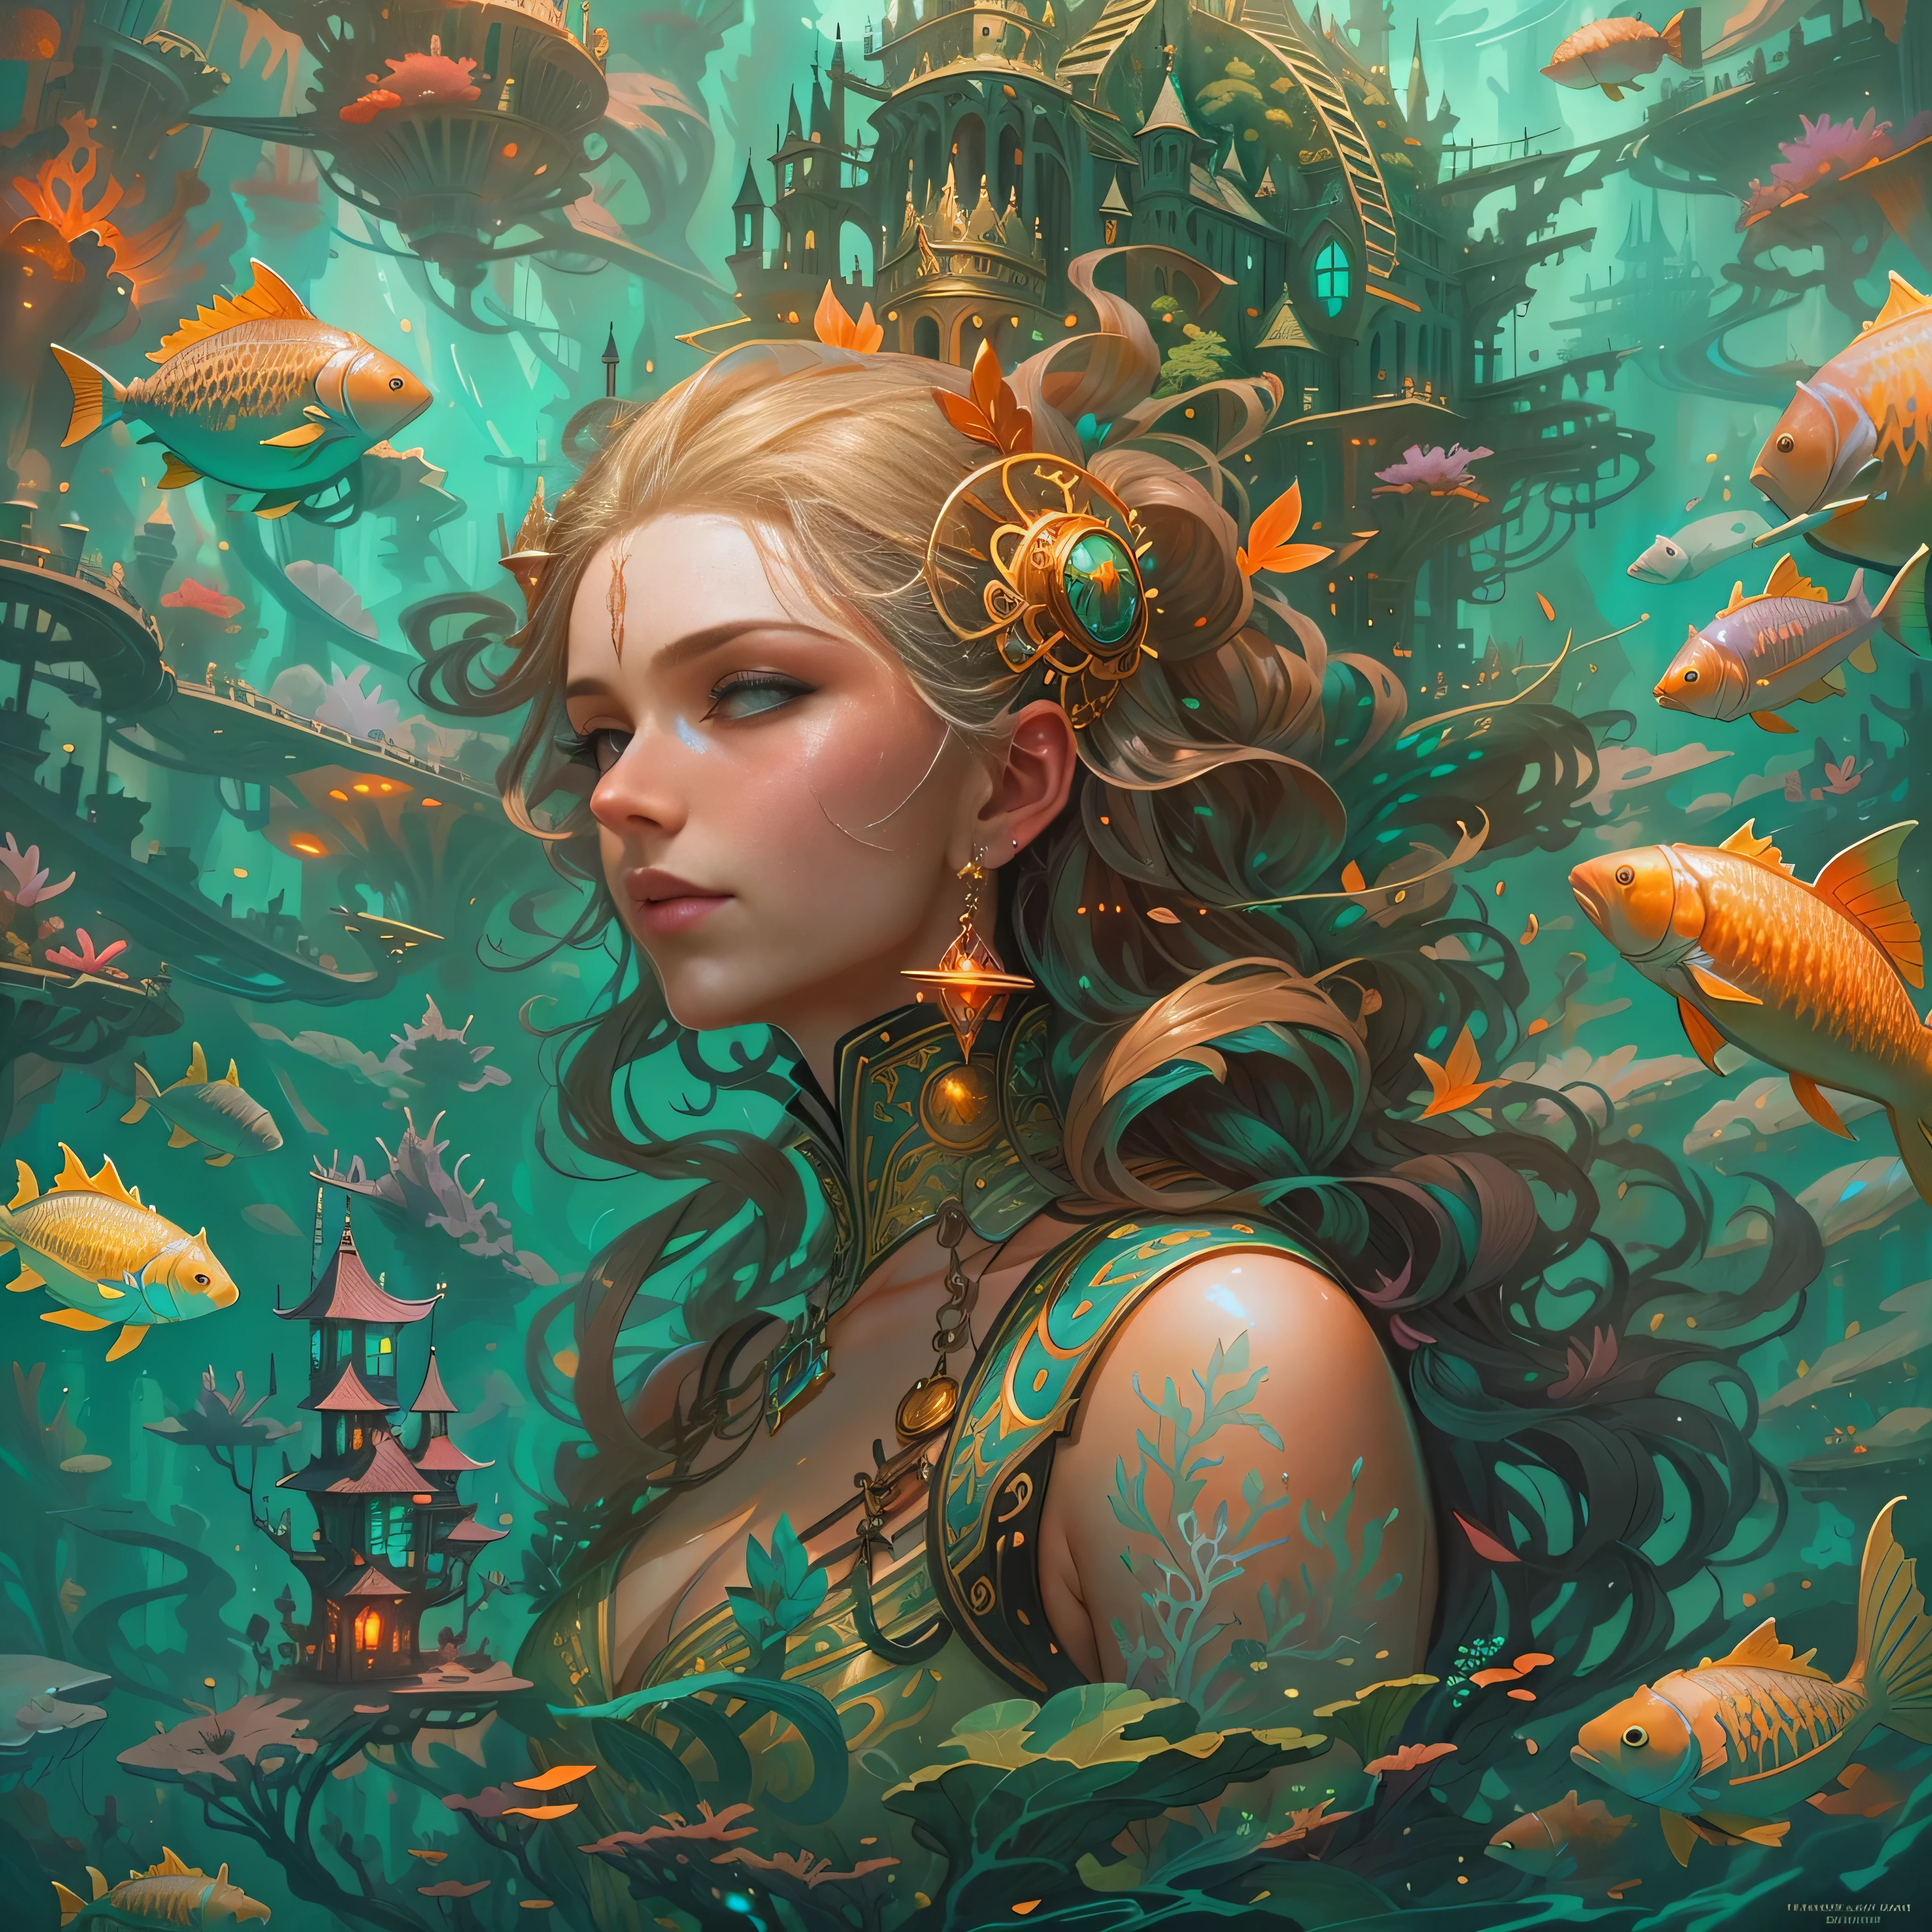 杰作，（（远处的城堡：1.4，）），梦幻般的水下城市。（海底美人鱼女王，金发，珊瑚礁戴在他的头上，美丽明亮的眼睛），被鱼包围, 很多鱼，一群鱼向她游来，珊瑚礁，气泡，水下施工，和芒福德·汤姆·巴格肖, 只是个玩笑, 幻想艺术 behance, 莫尔巴赫尔, 奇幻艺术风格, 详细的幻想插画, 一幅美丽的艺术插图, 幻想艺术插图, style of peter 莫尔巴赫尔, peter 莫尔巴赫尔''，官方艺术美学，